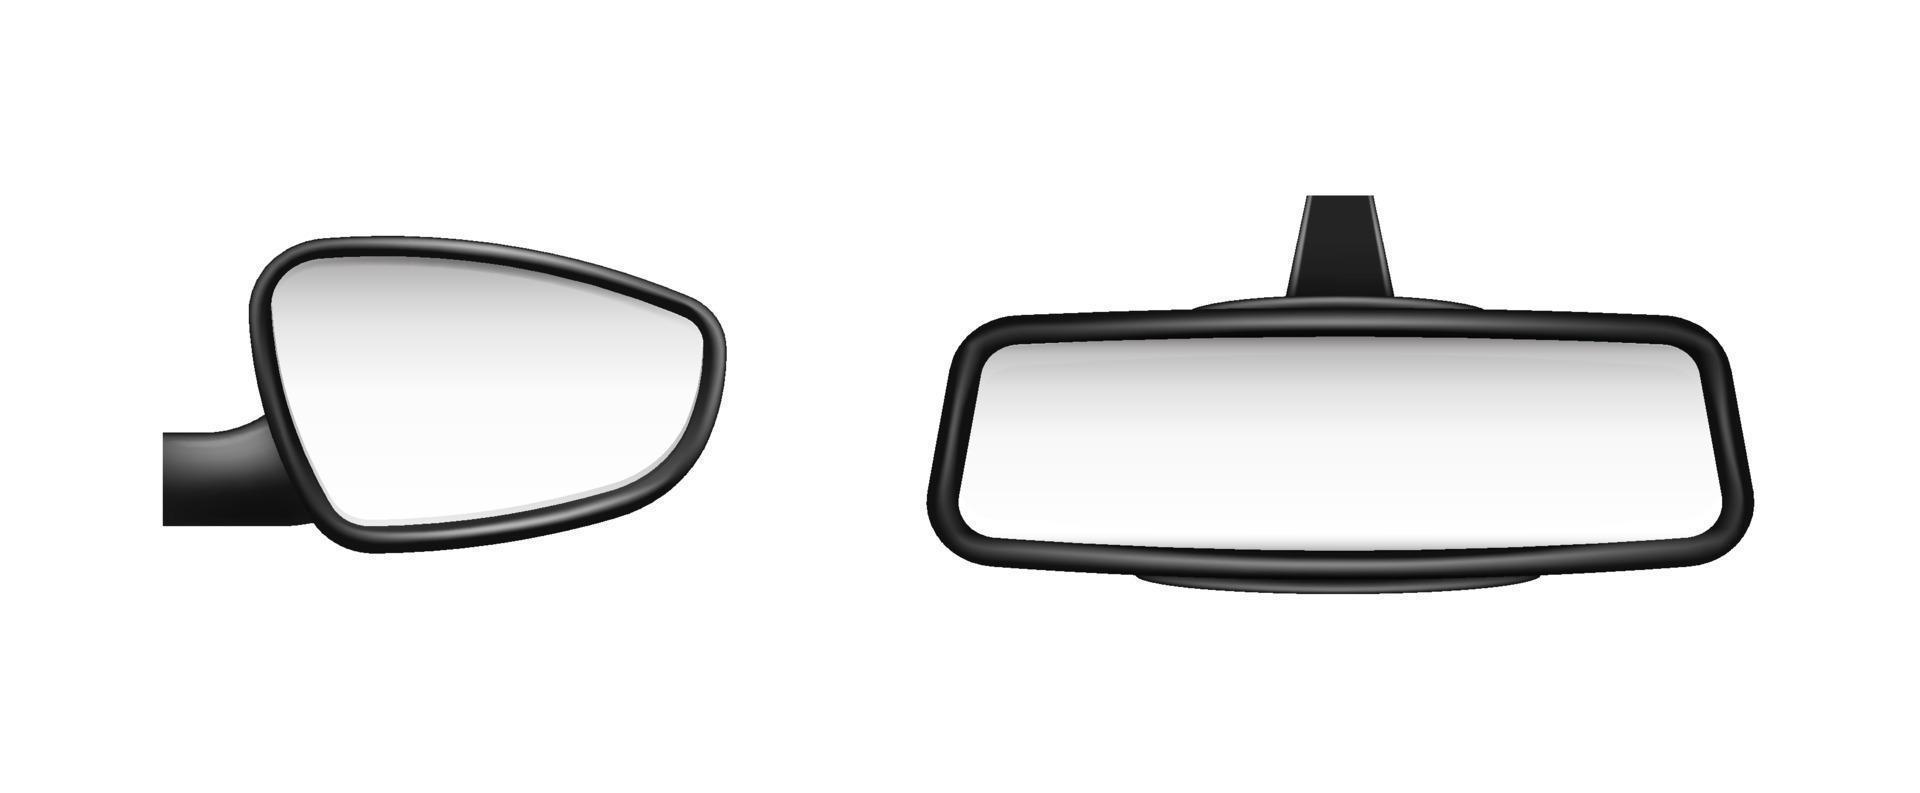 auto lato e posteriore Visualizza specchi modello. vuoto rispecchiato oggetti con nero telaio per Visualizza strada e pedoni sicurezza simbolo su vettore autostrada.